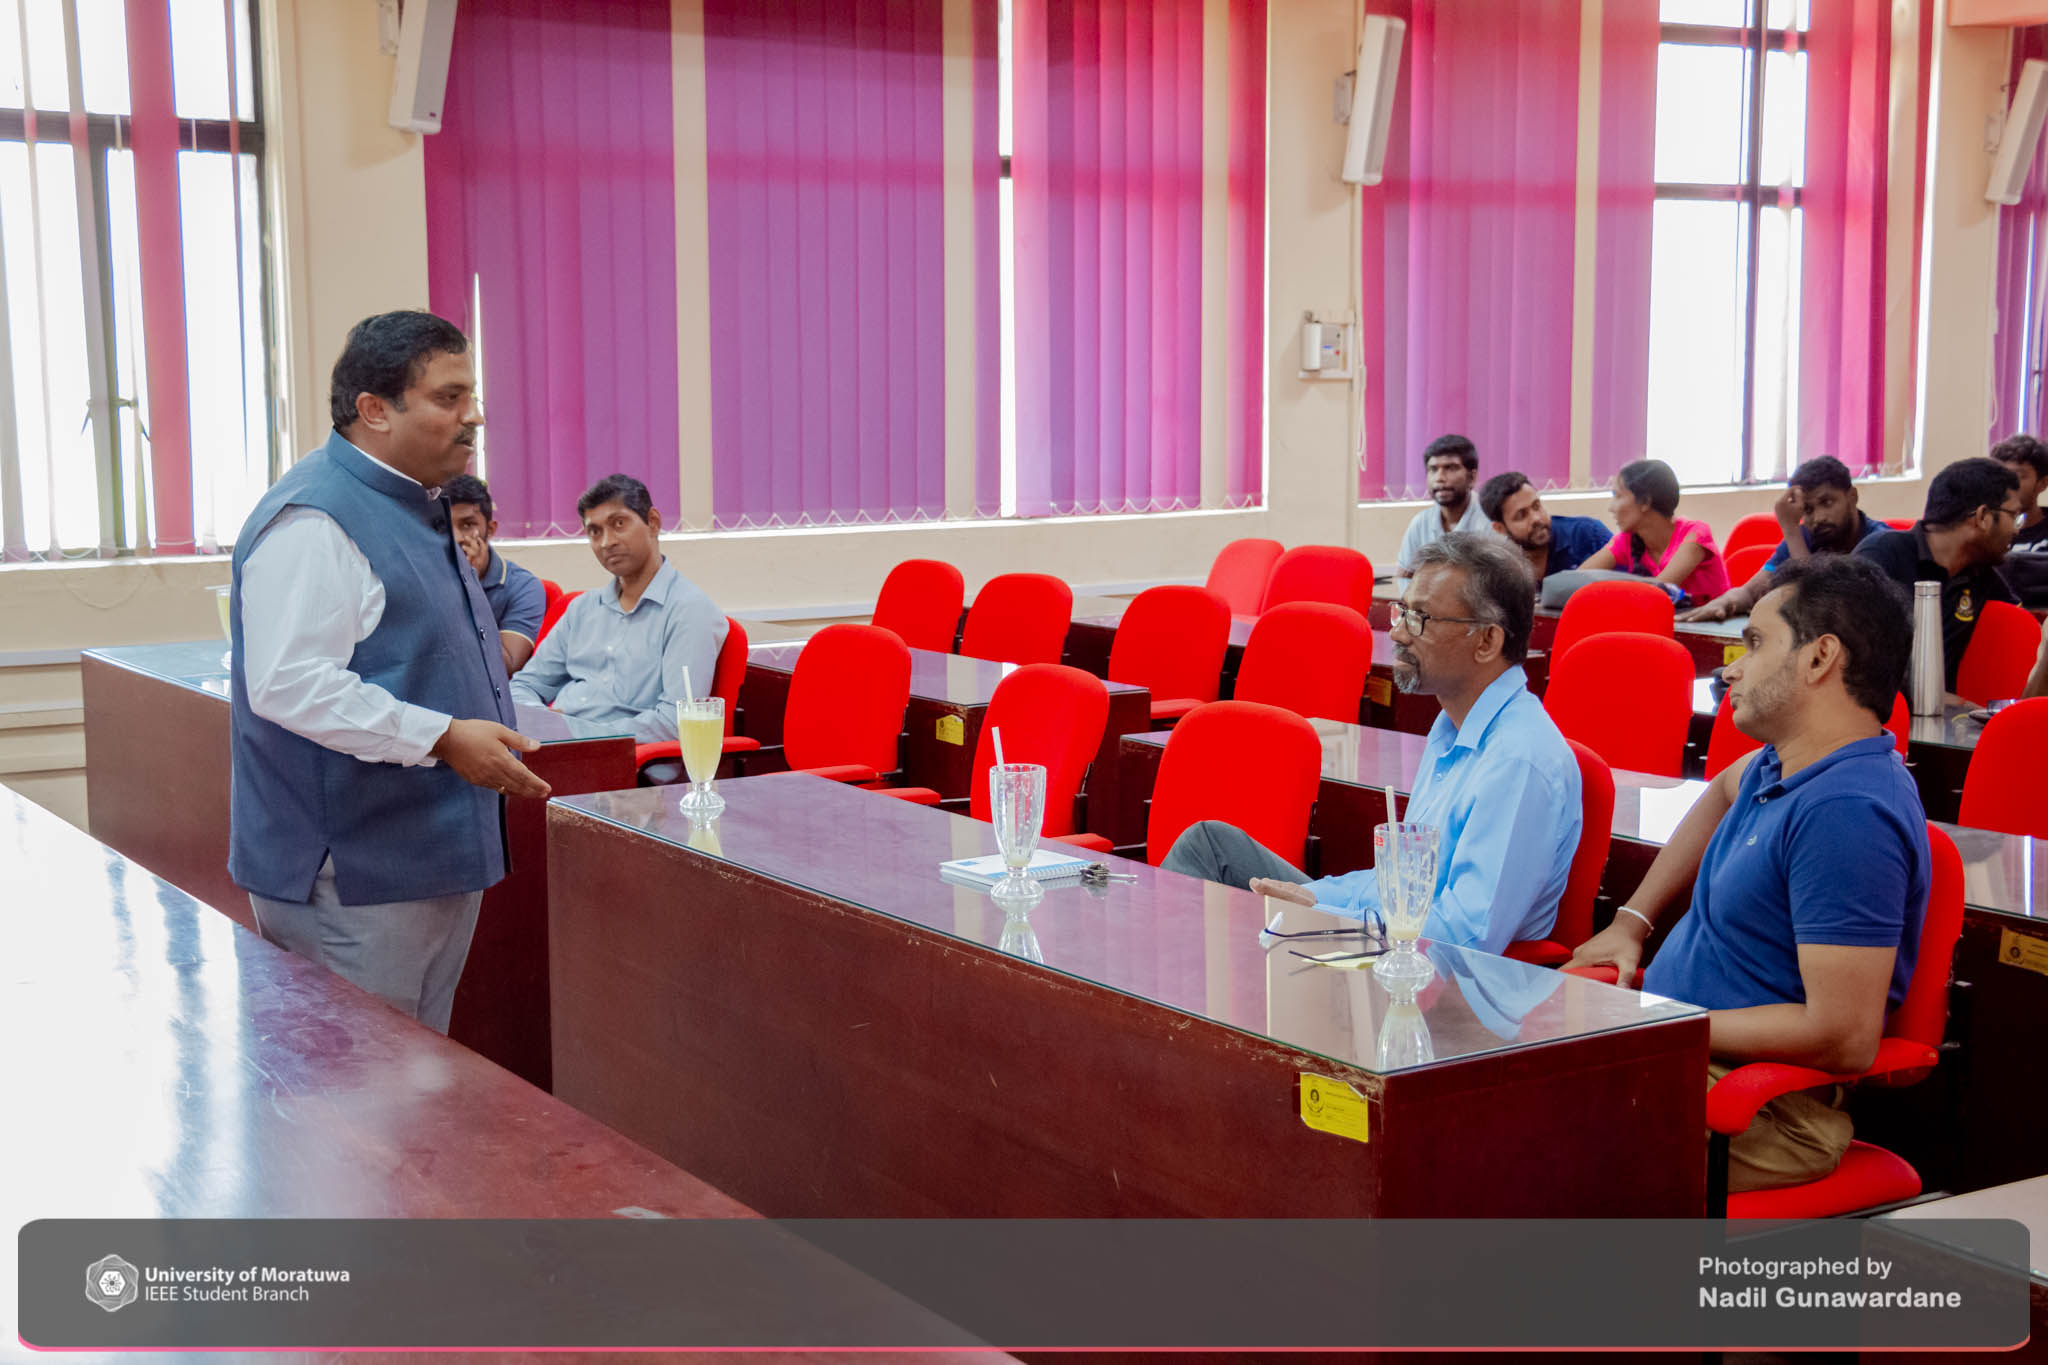 Professor Arun Kumar Sangaiah visited the University of Moratuwa